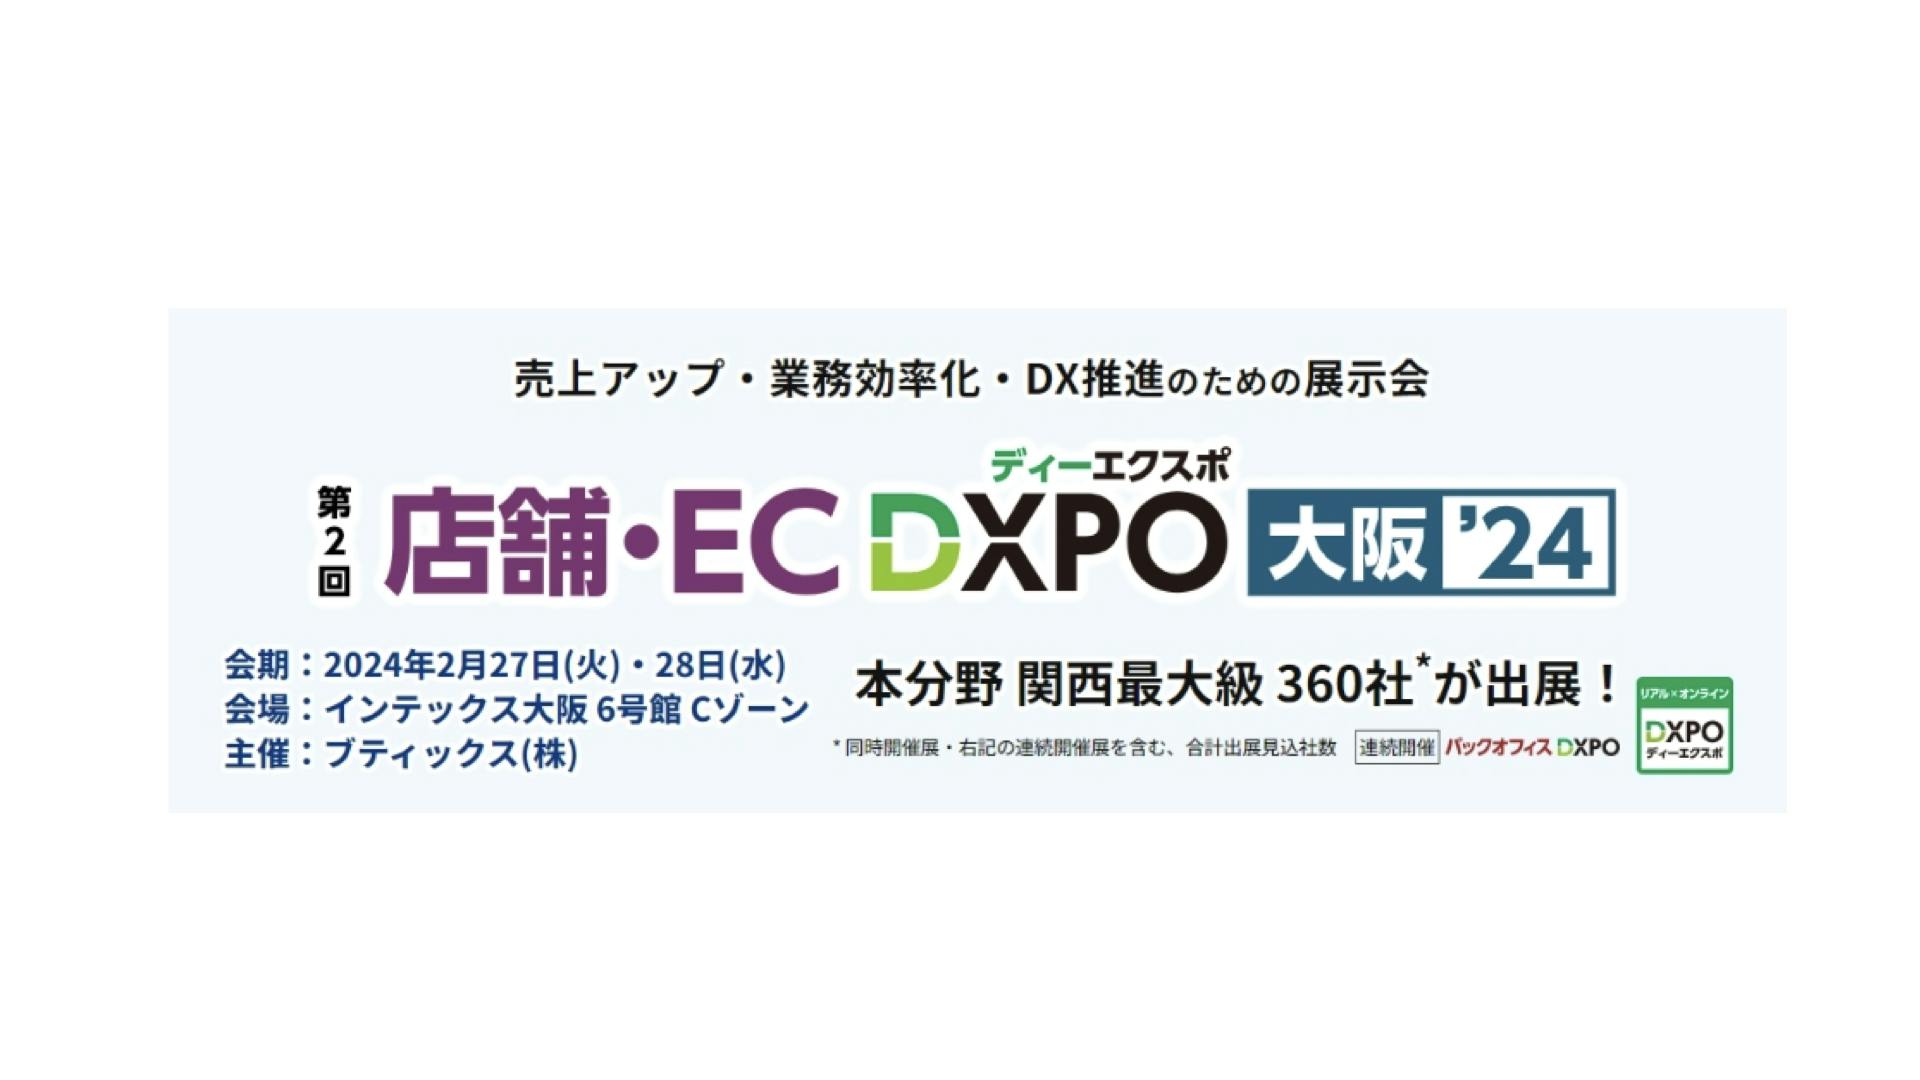 第2回「店舗・EC DXPO 大阪’24」に統合コマースプラットフォーム「ecforce」を出展いたします